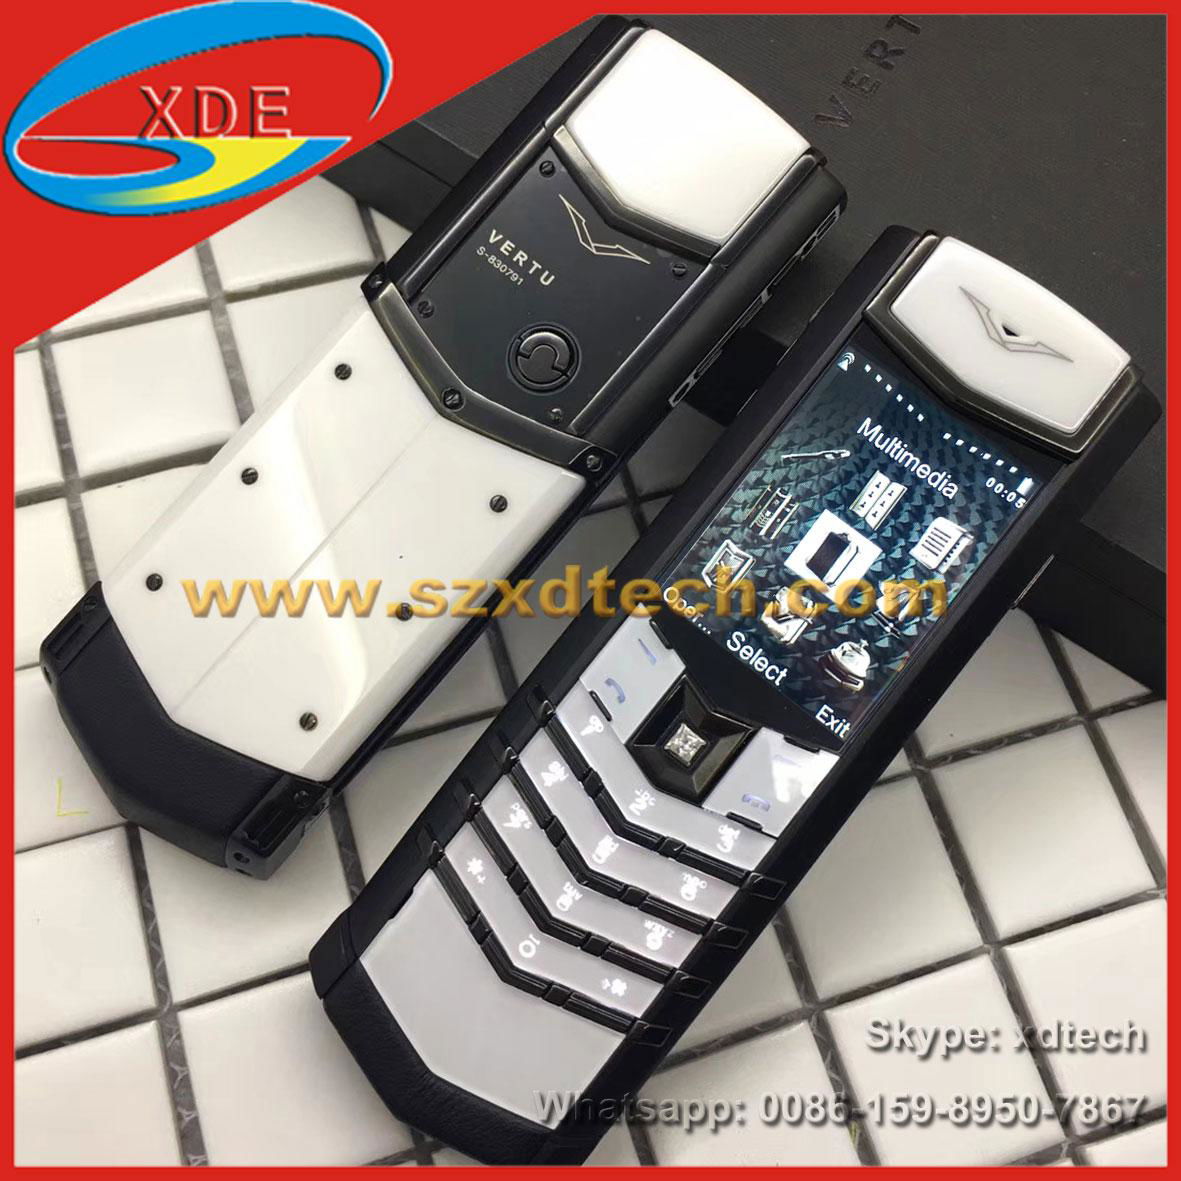 Cool Vertu Signature S, White and Black Color, Replica Vertu Mobile Phones